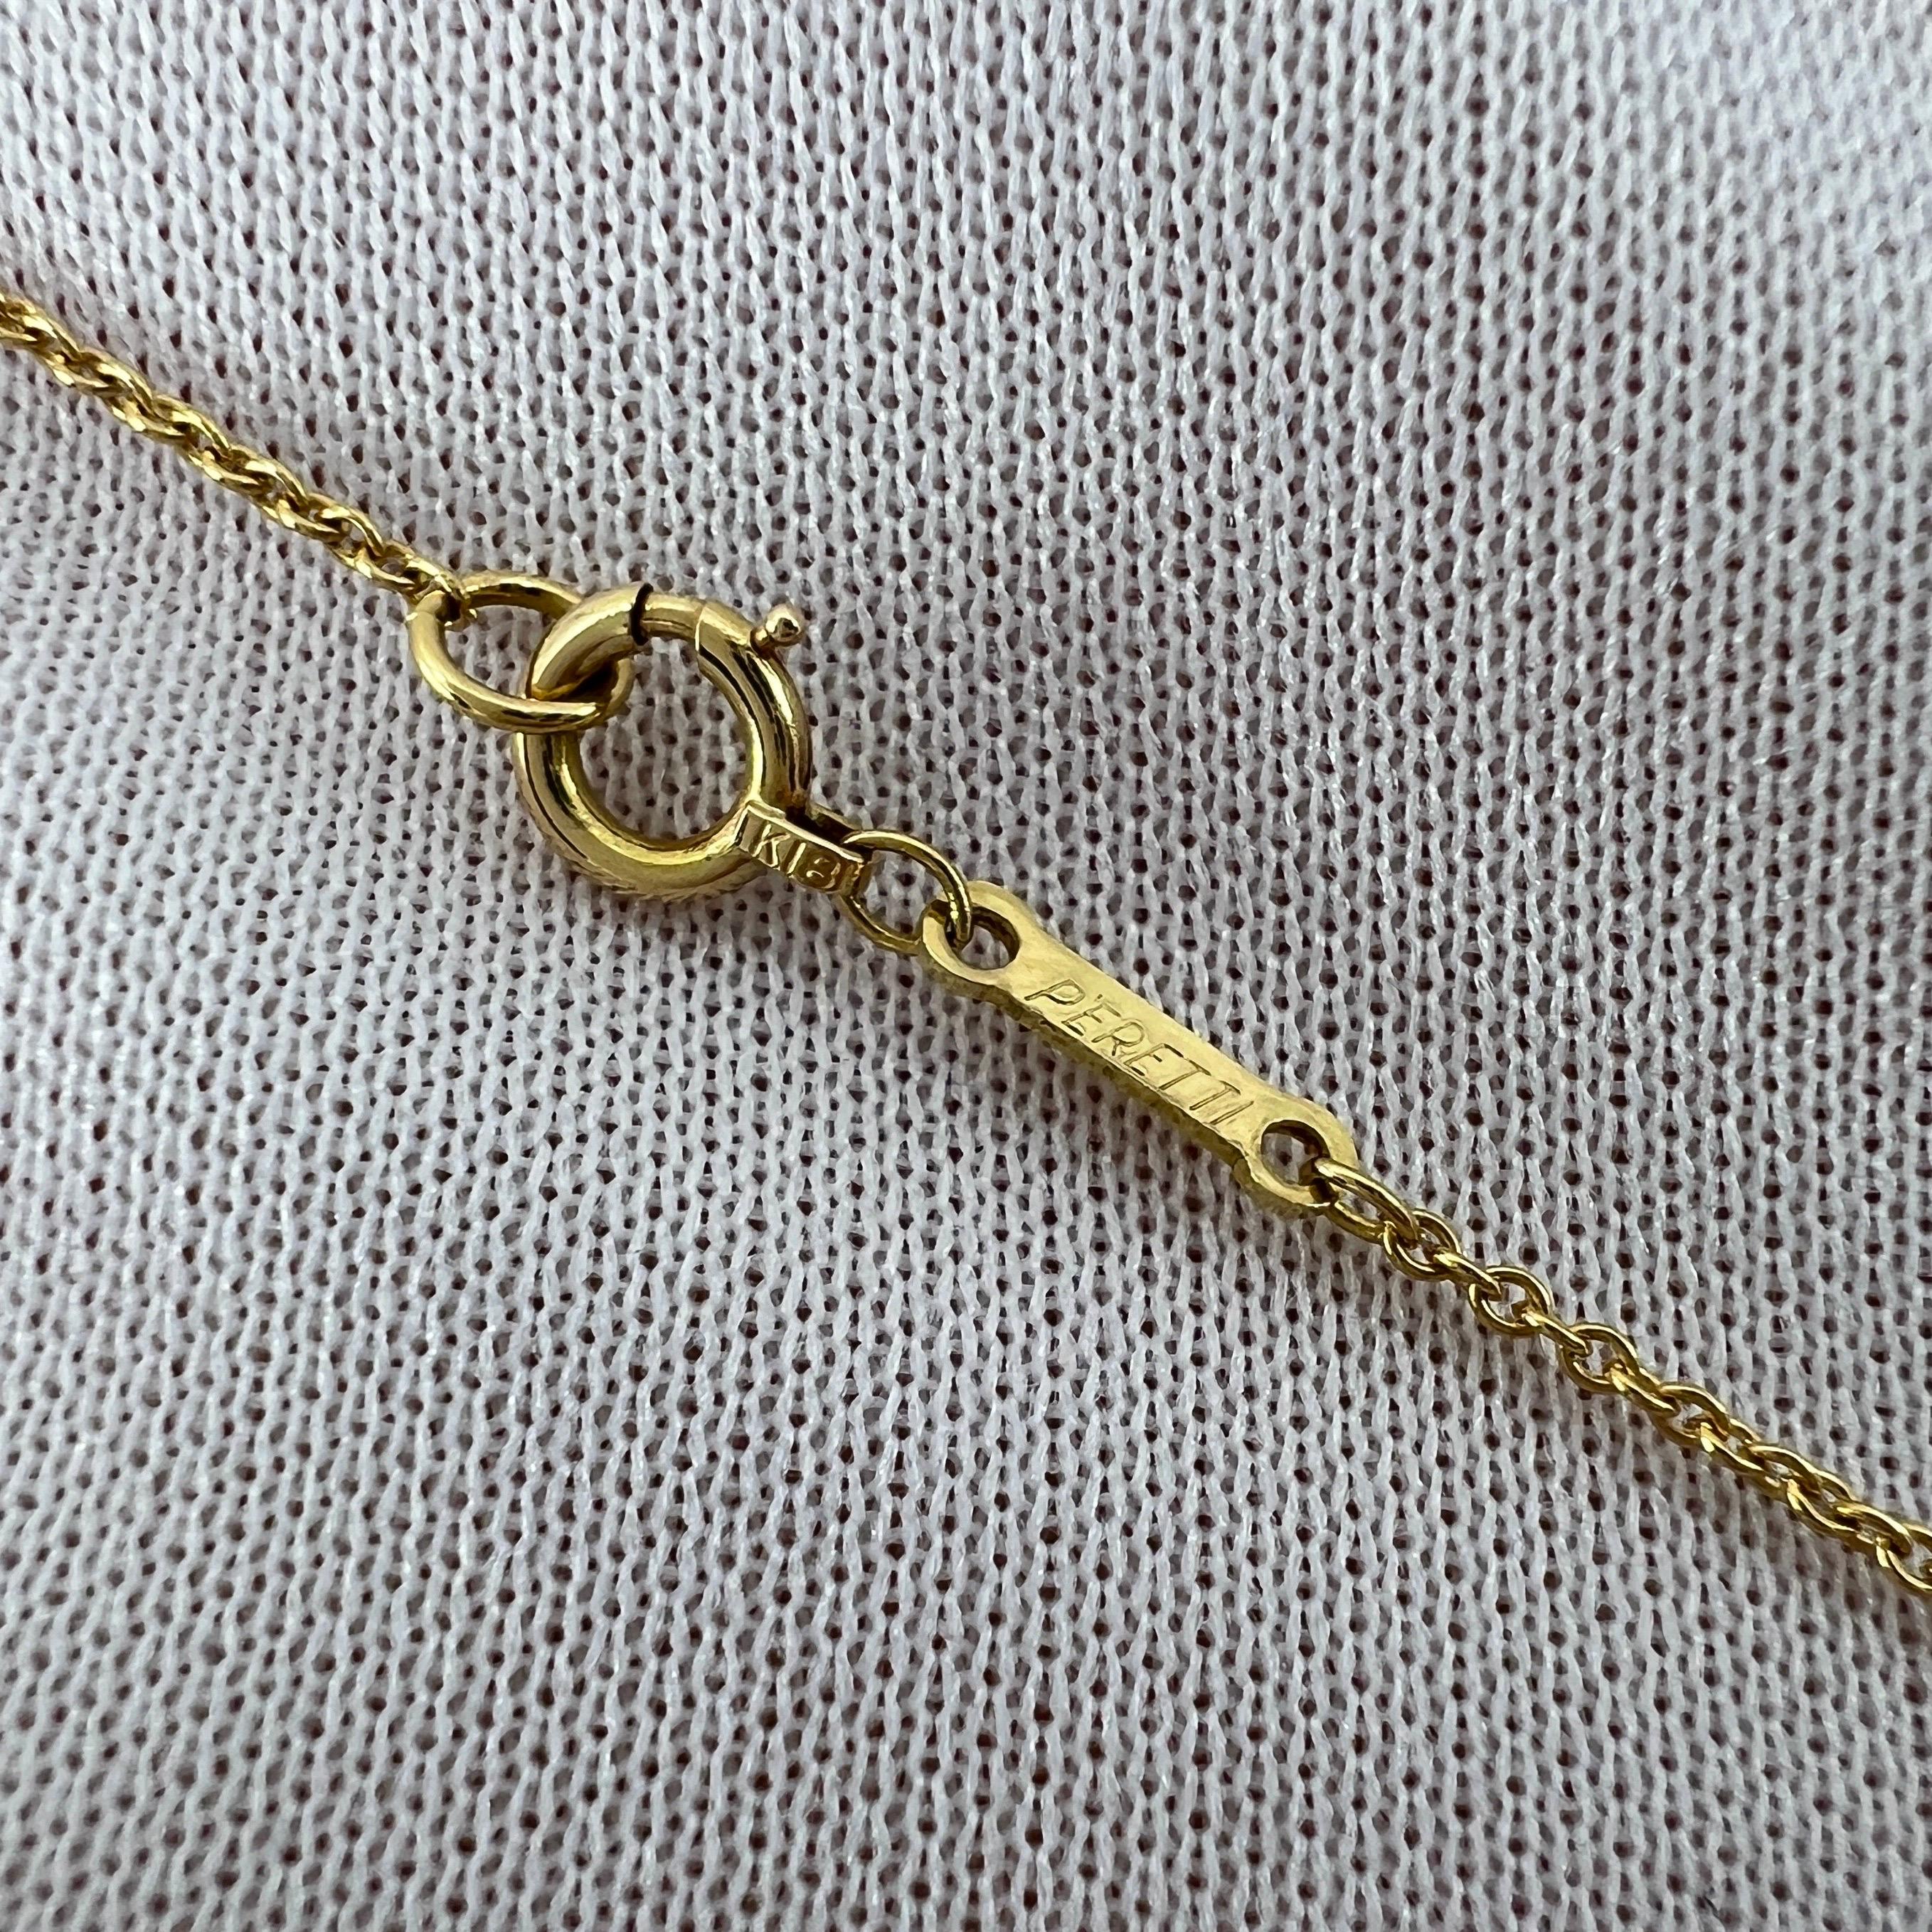 Tiffany & Co. Elsa Peretti Open Heart Diamond 18k Yellow Gold Pendant Necklace For Sale 5